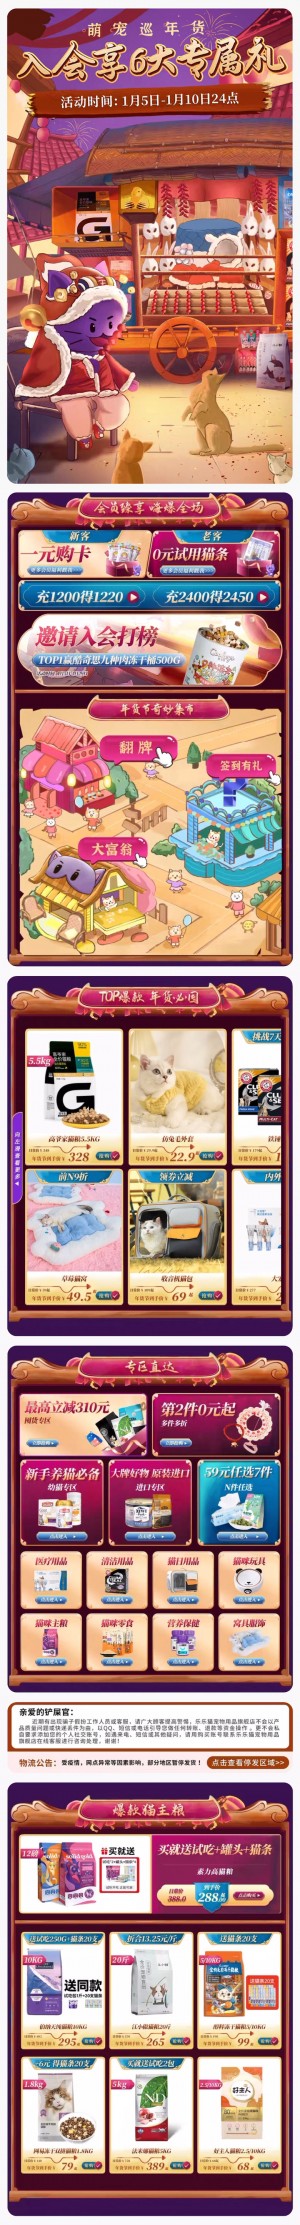 天猫首页乐乐猫宠物用品 宠物食品 新年 年货节 手机端 M端活动首页设计